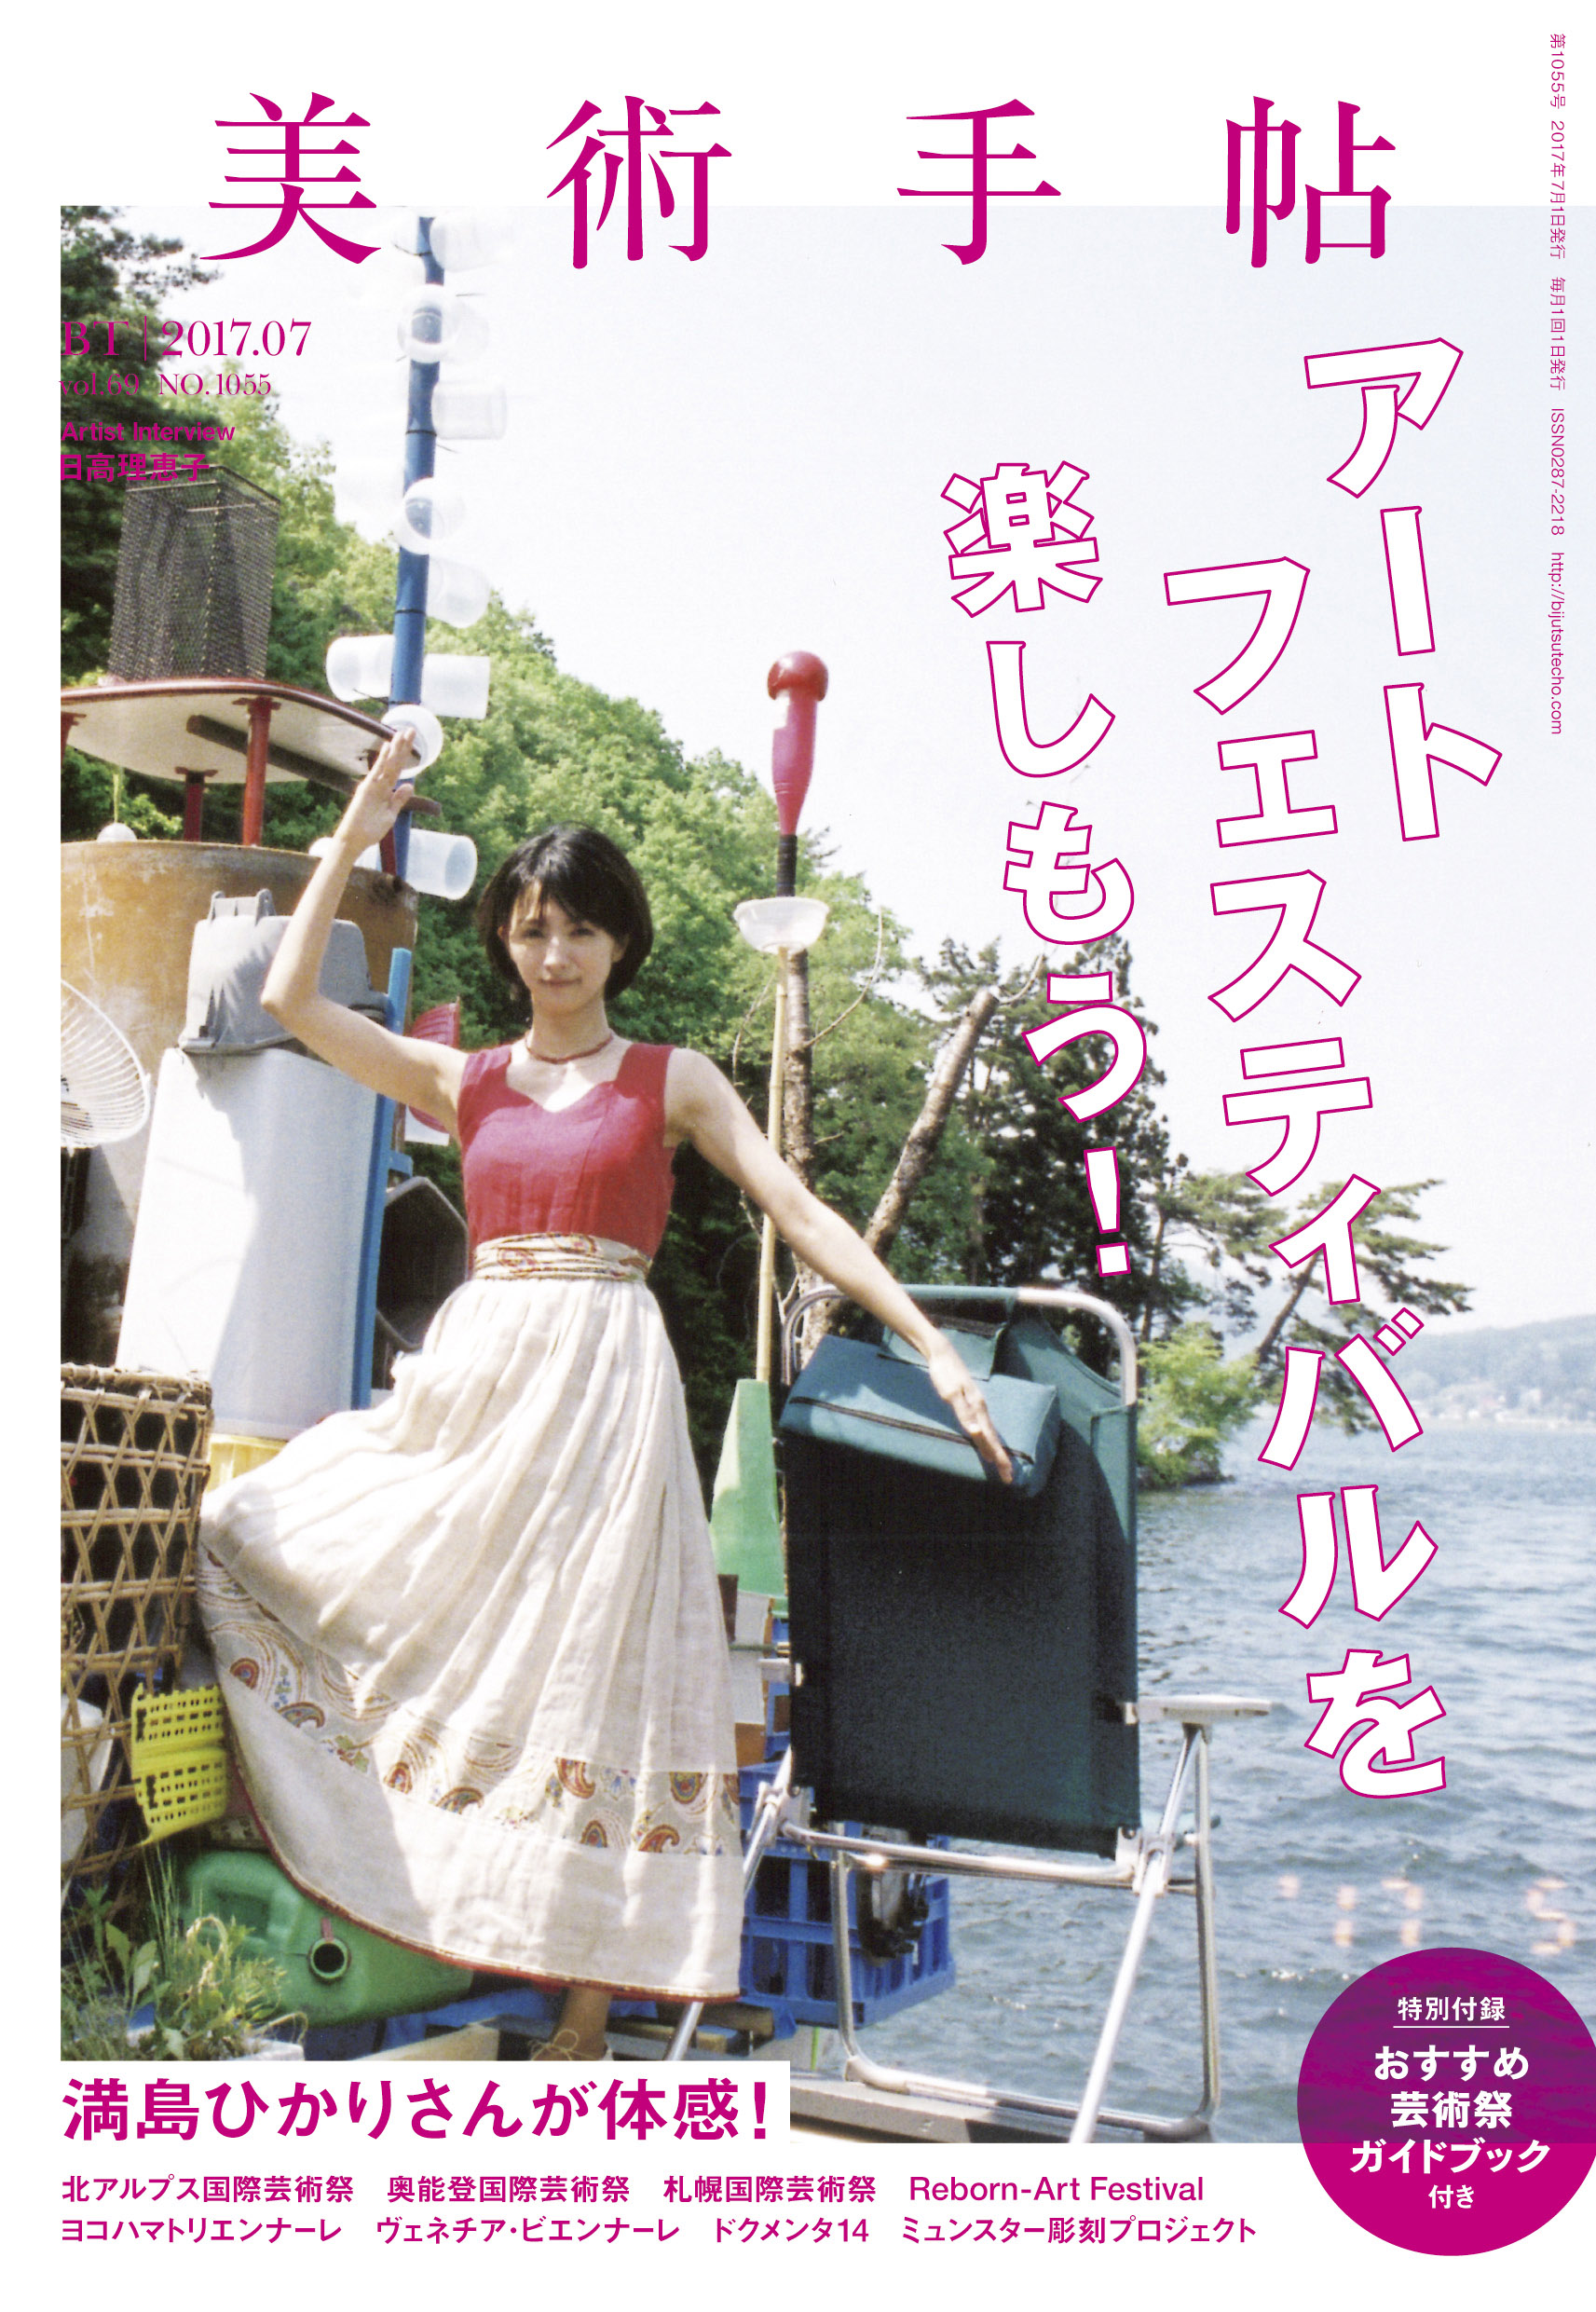 満島ひかりとアートの旅 美術手帖 7月号はアートフェスティバル特集 美術出版社のプレスリリース